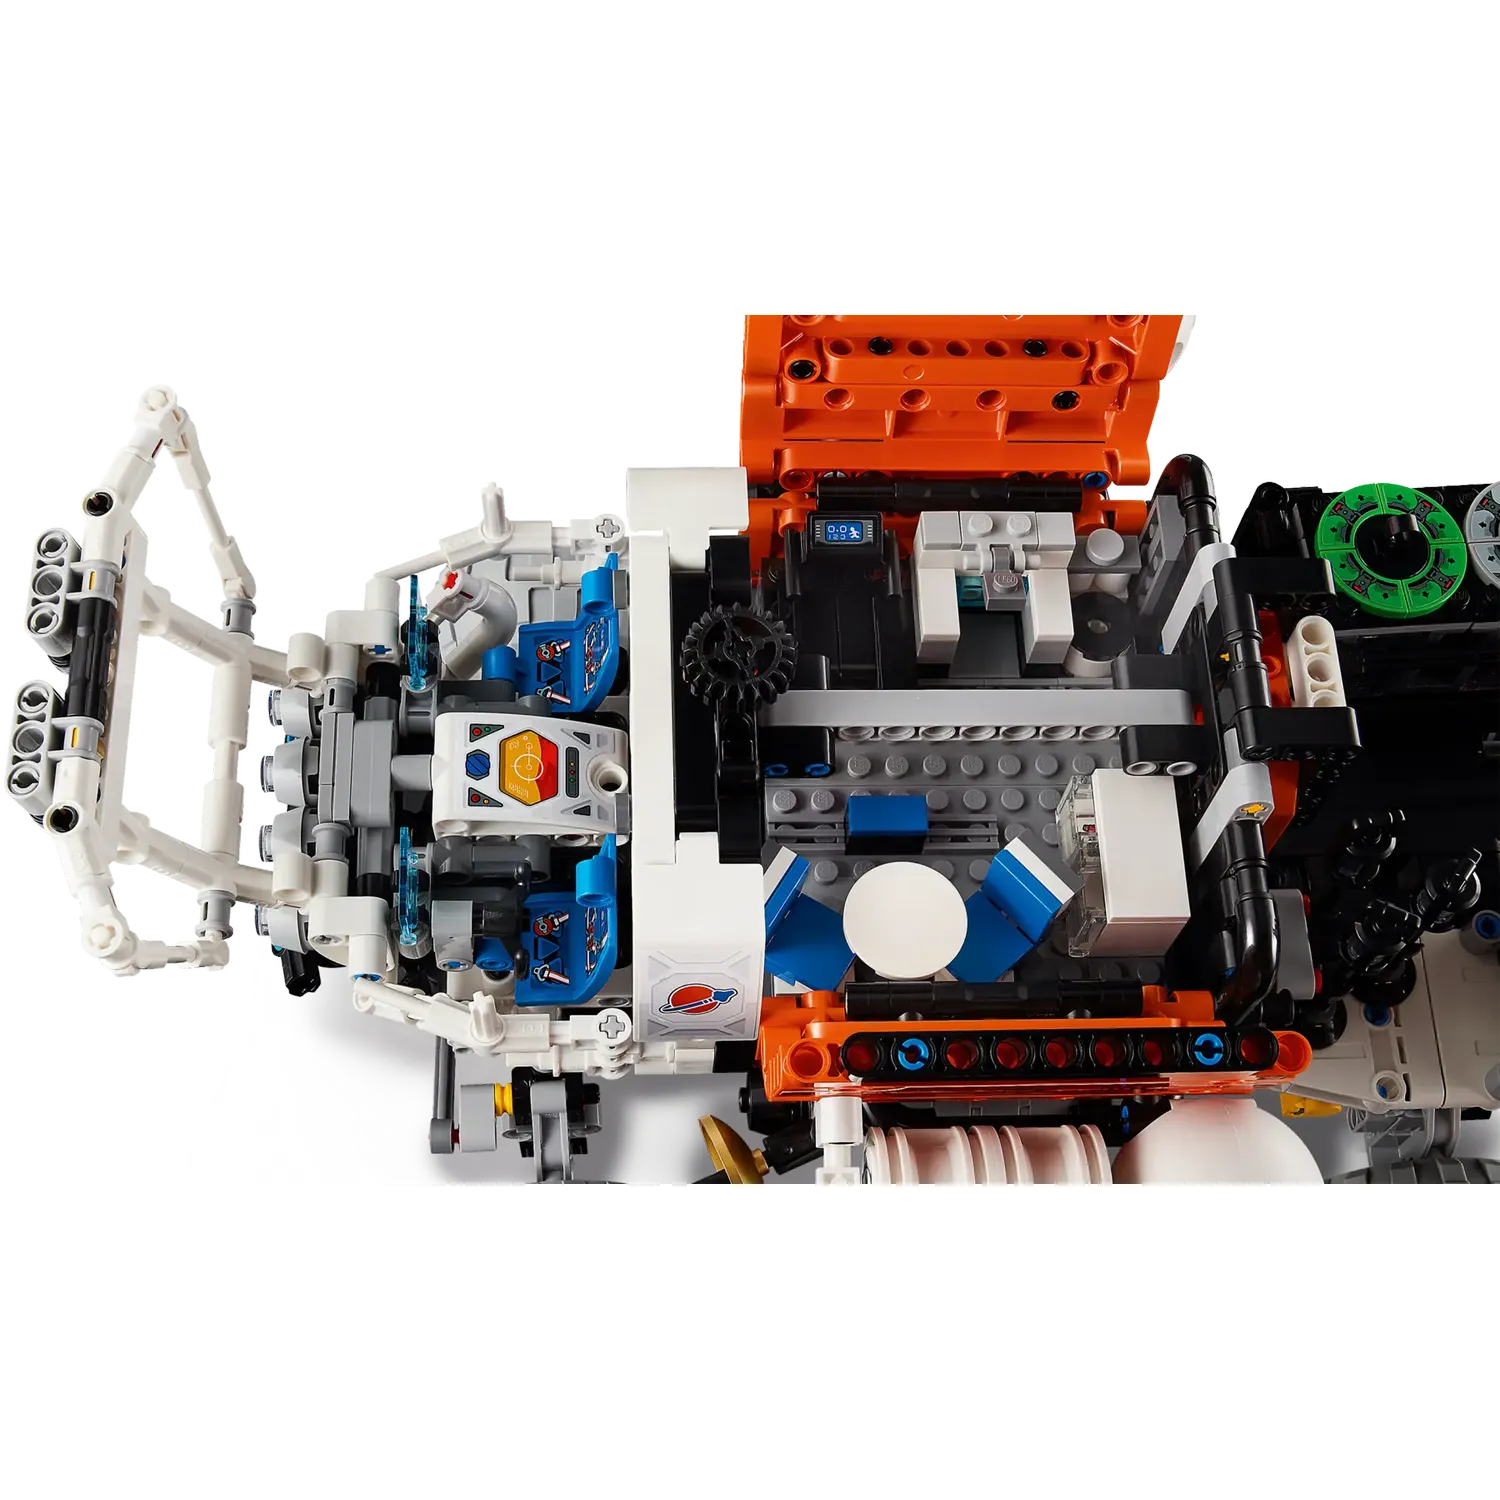 Конструктор LEGO Technic Марсохід команди дослідників 1599 деталей (42180) - фото 9